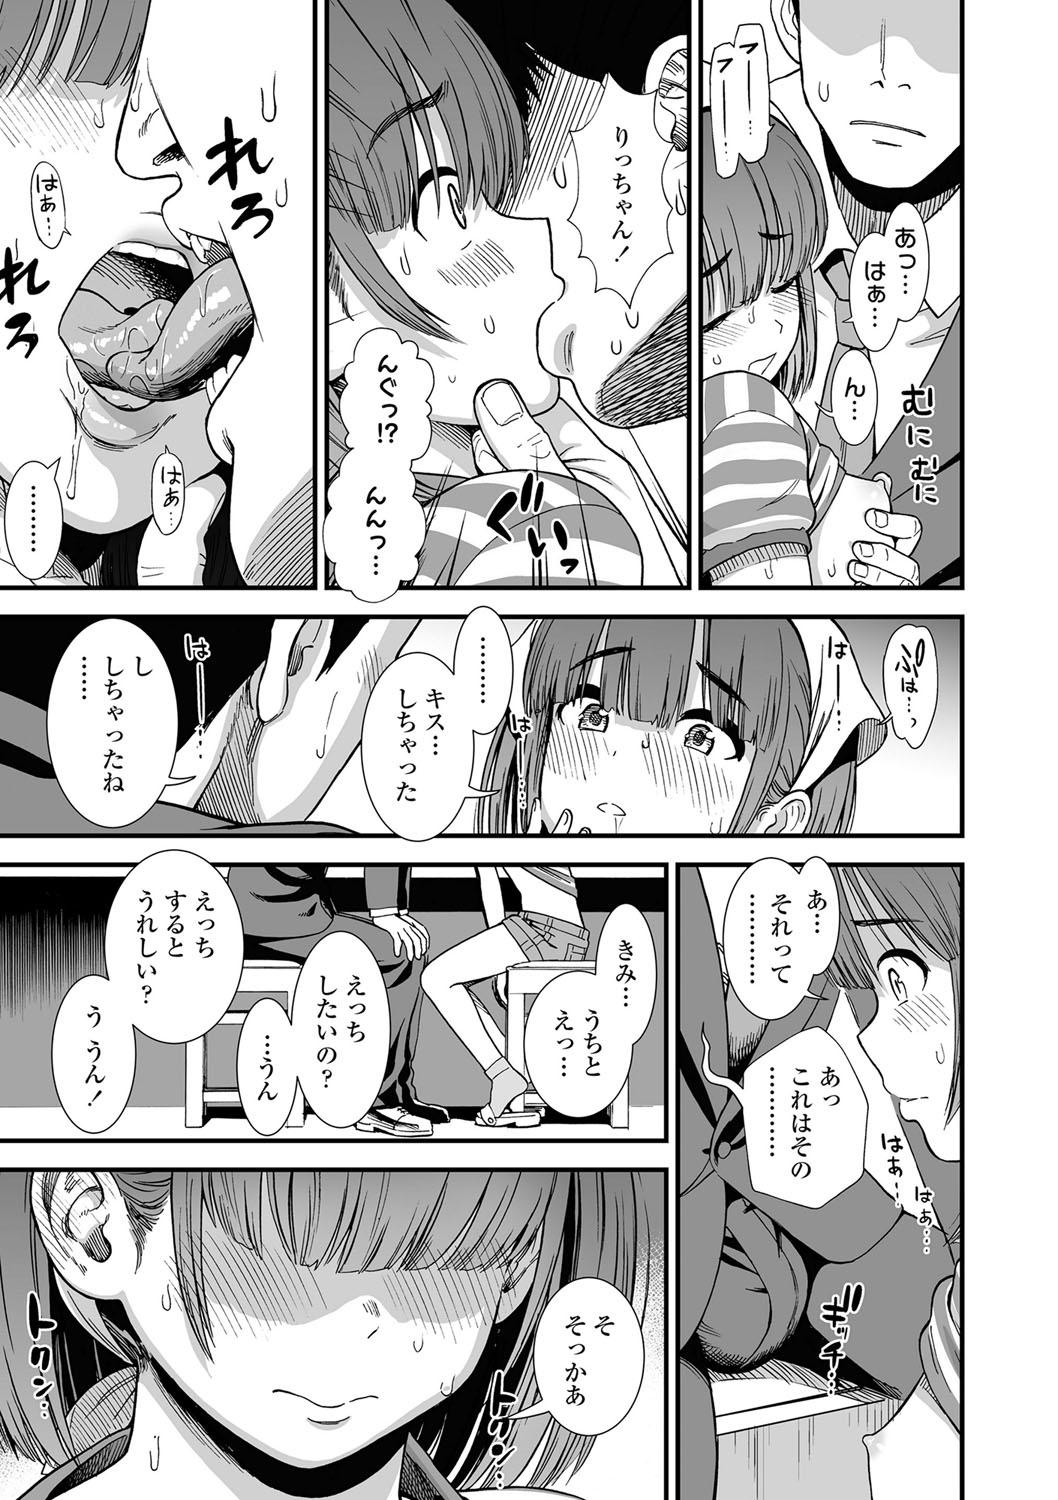 Fishnet Ore wa Kuzu dakara koso Sukuwareru Kenri ga Aru! Balls - Page 12